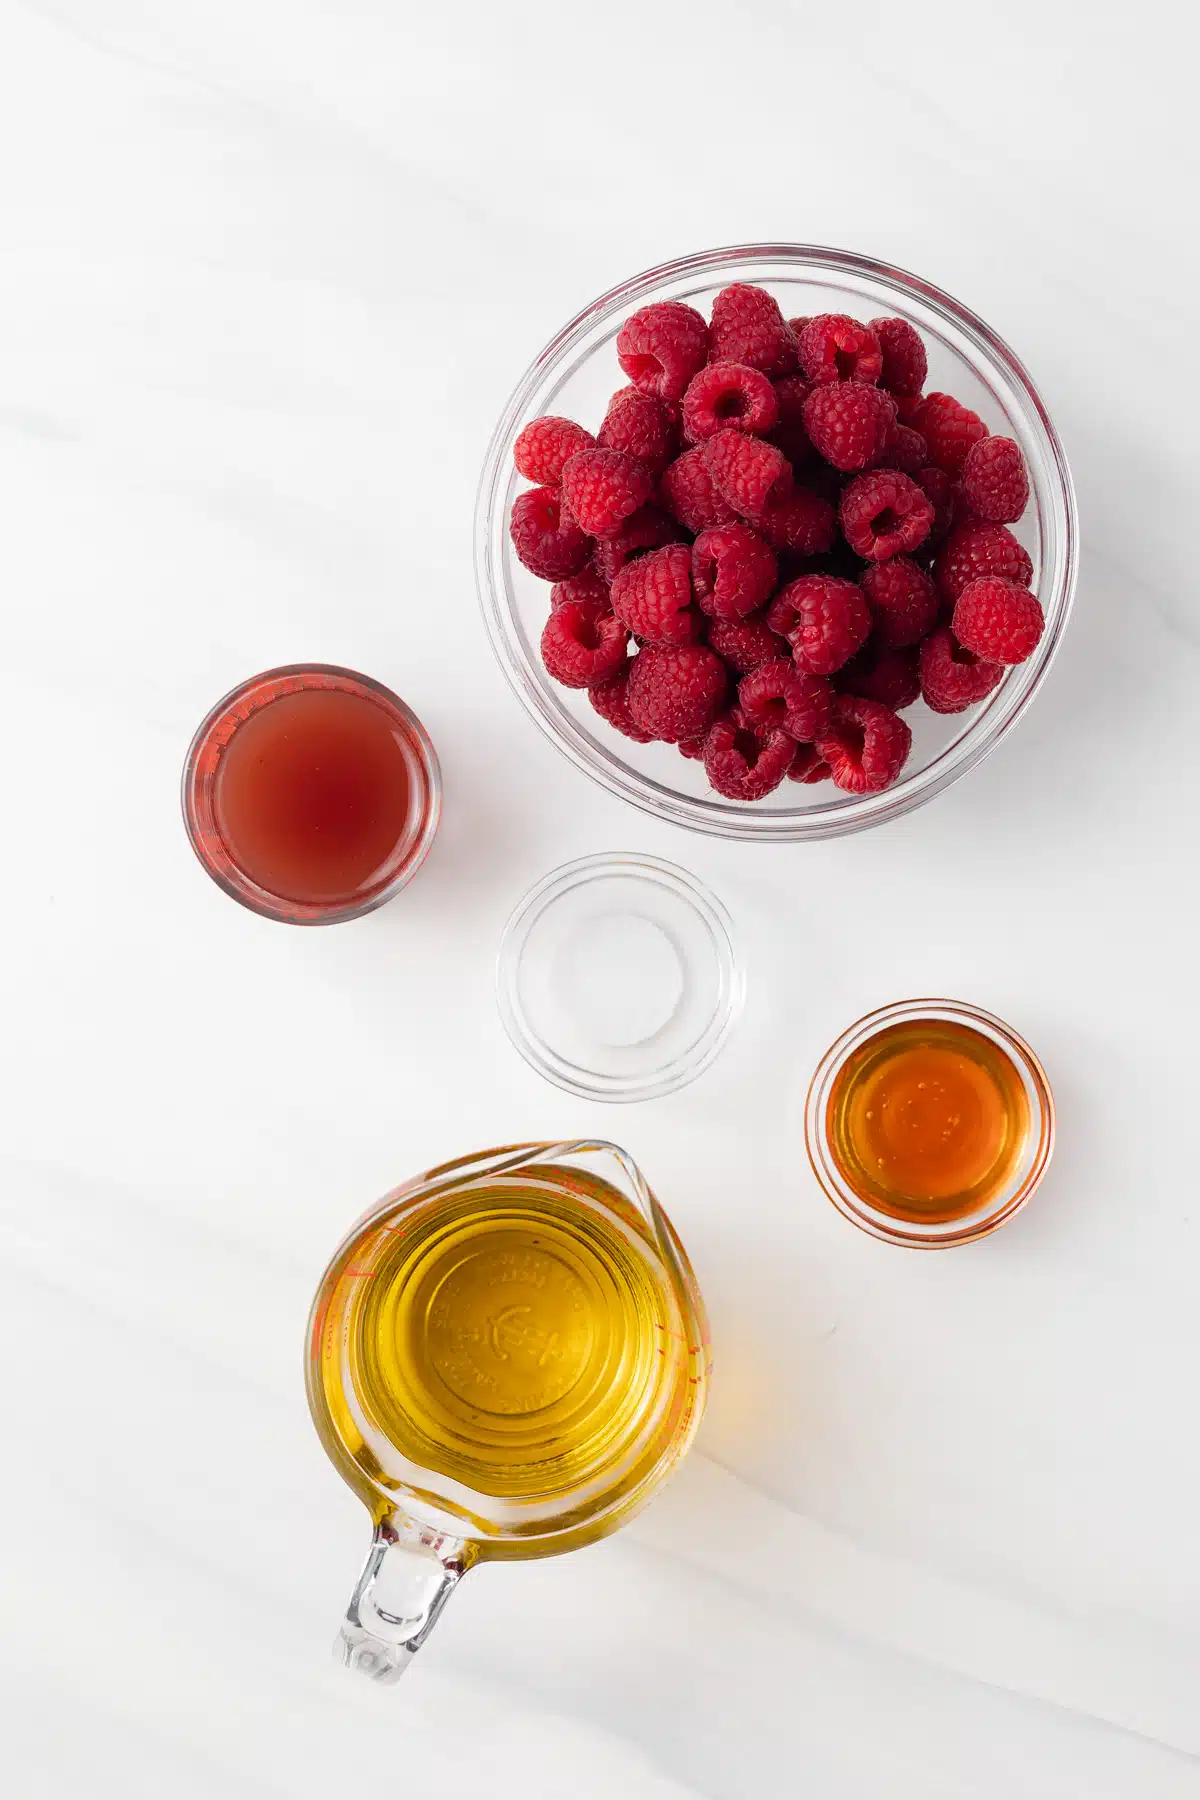 Ingredients for raspberry vinaigrette.